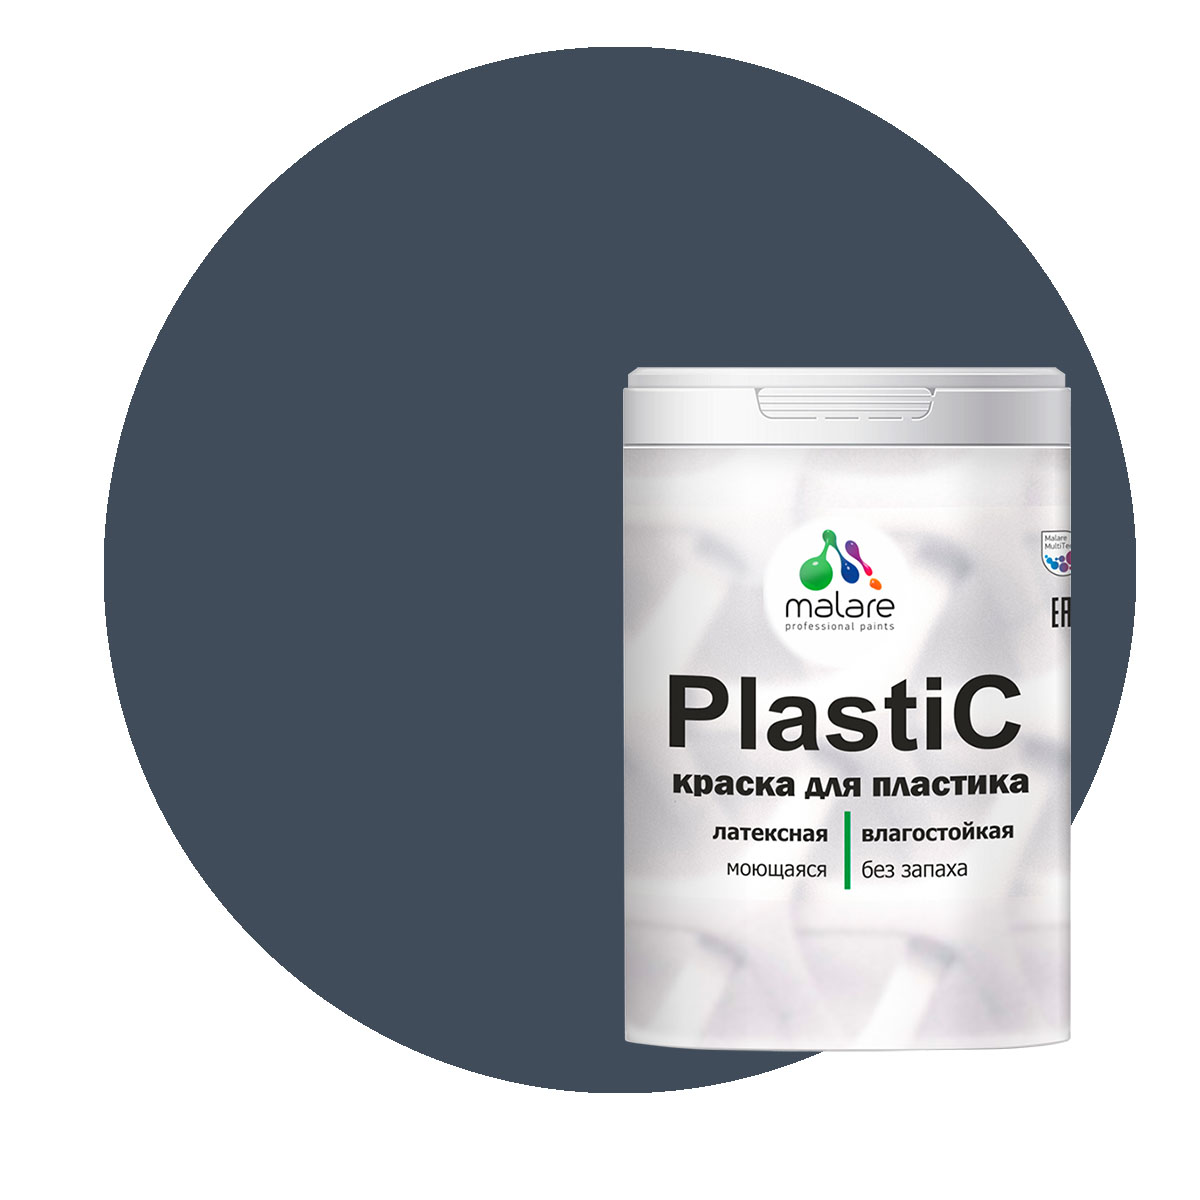 Краска Malare PlastiC для пластика, ПВХ, для сайдинга, гранитный, 2 кг. краска malare plastic для пластика пвх для сайдинга слоновая кость 10 кг